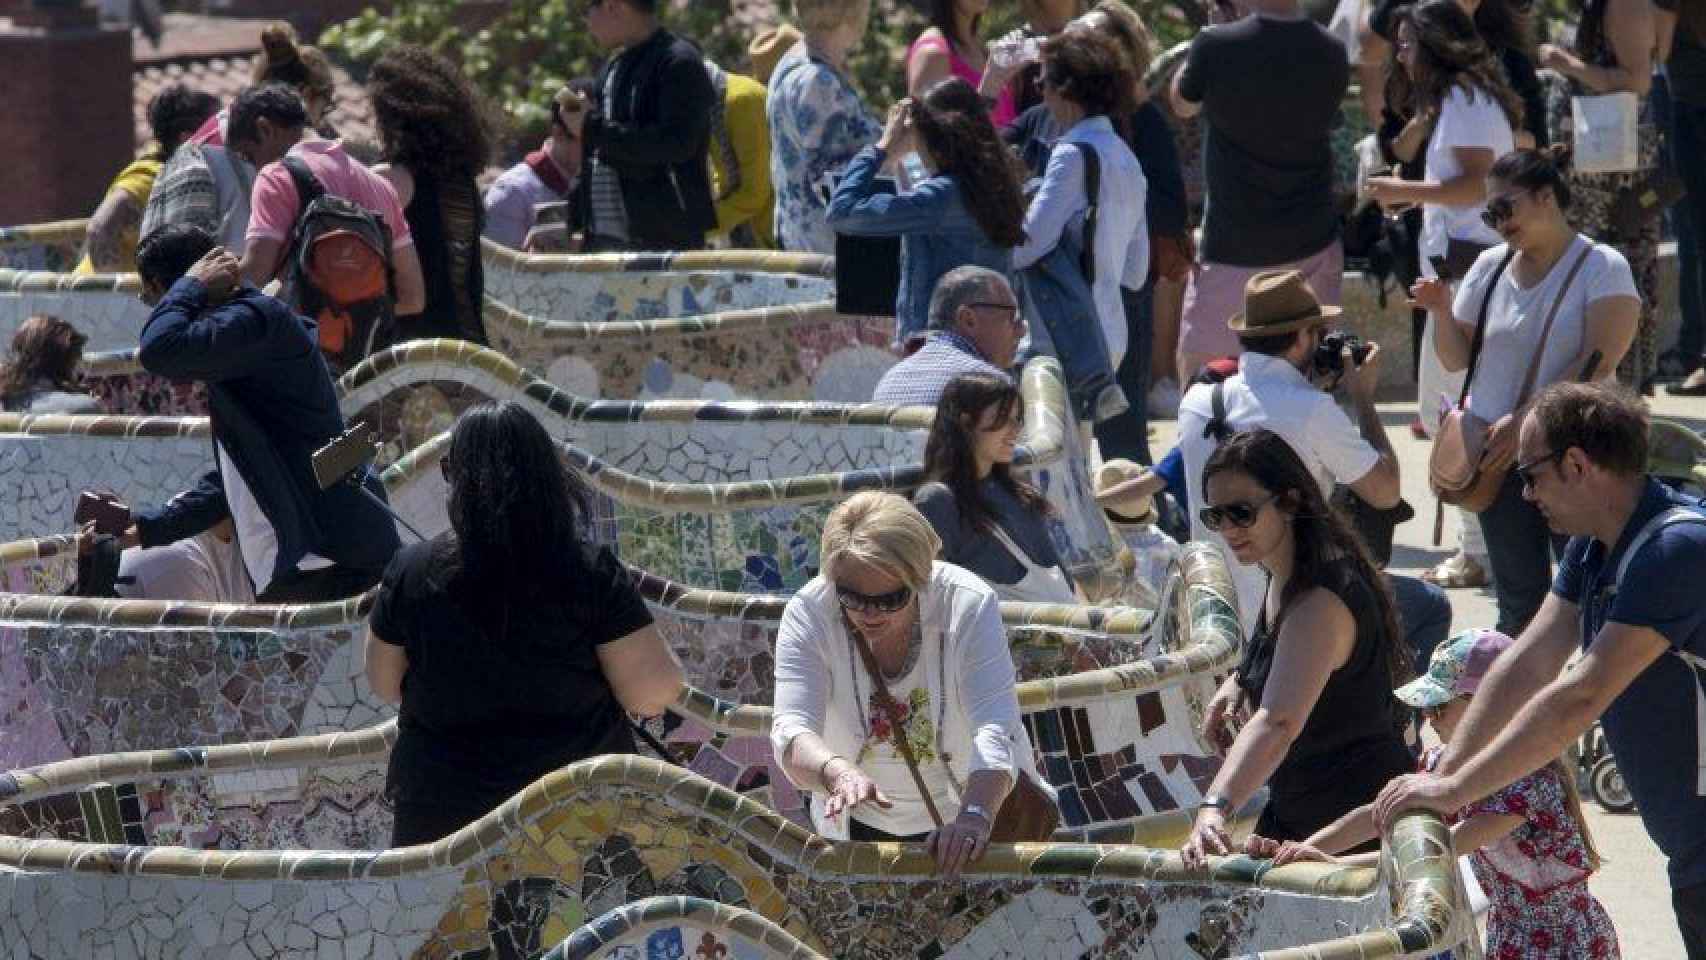 El parc Güell es uno de los principales atractivos de Barcelona para los turistas